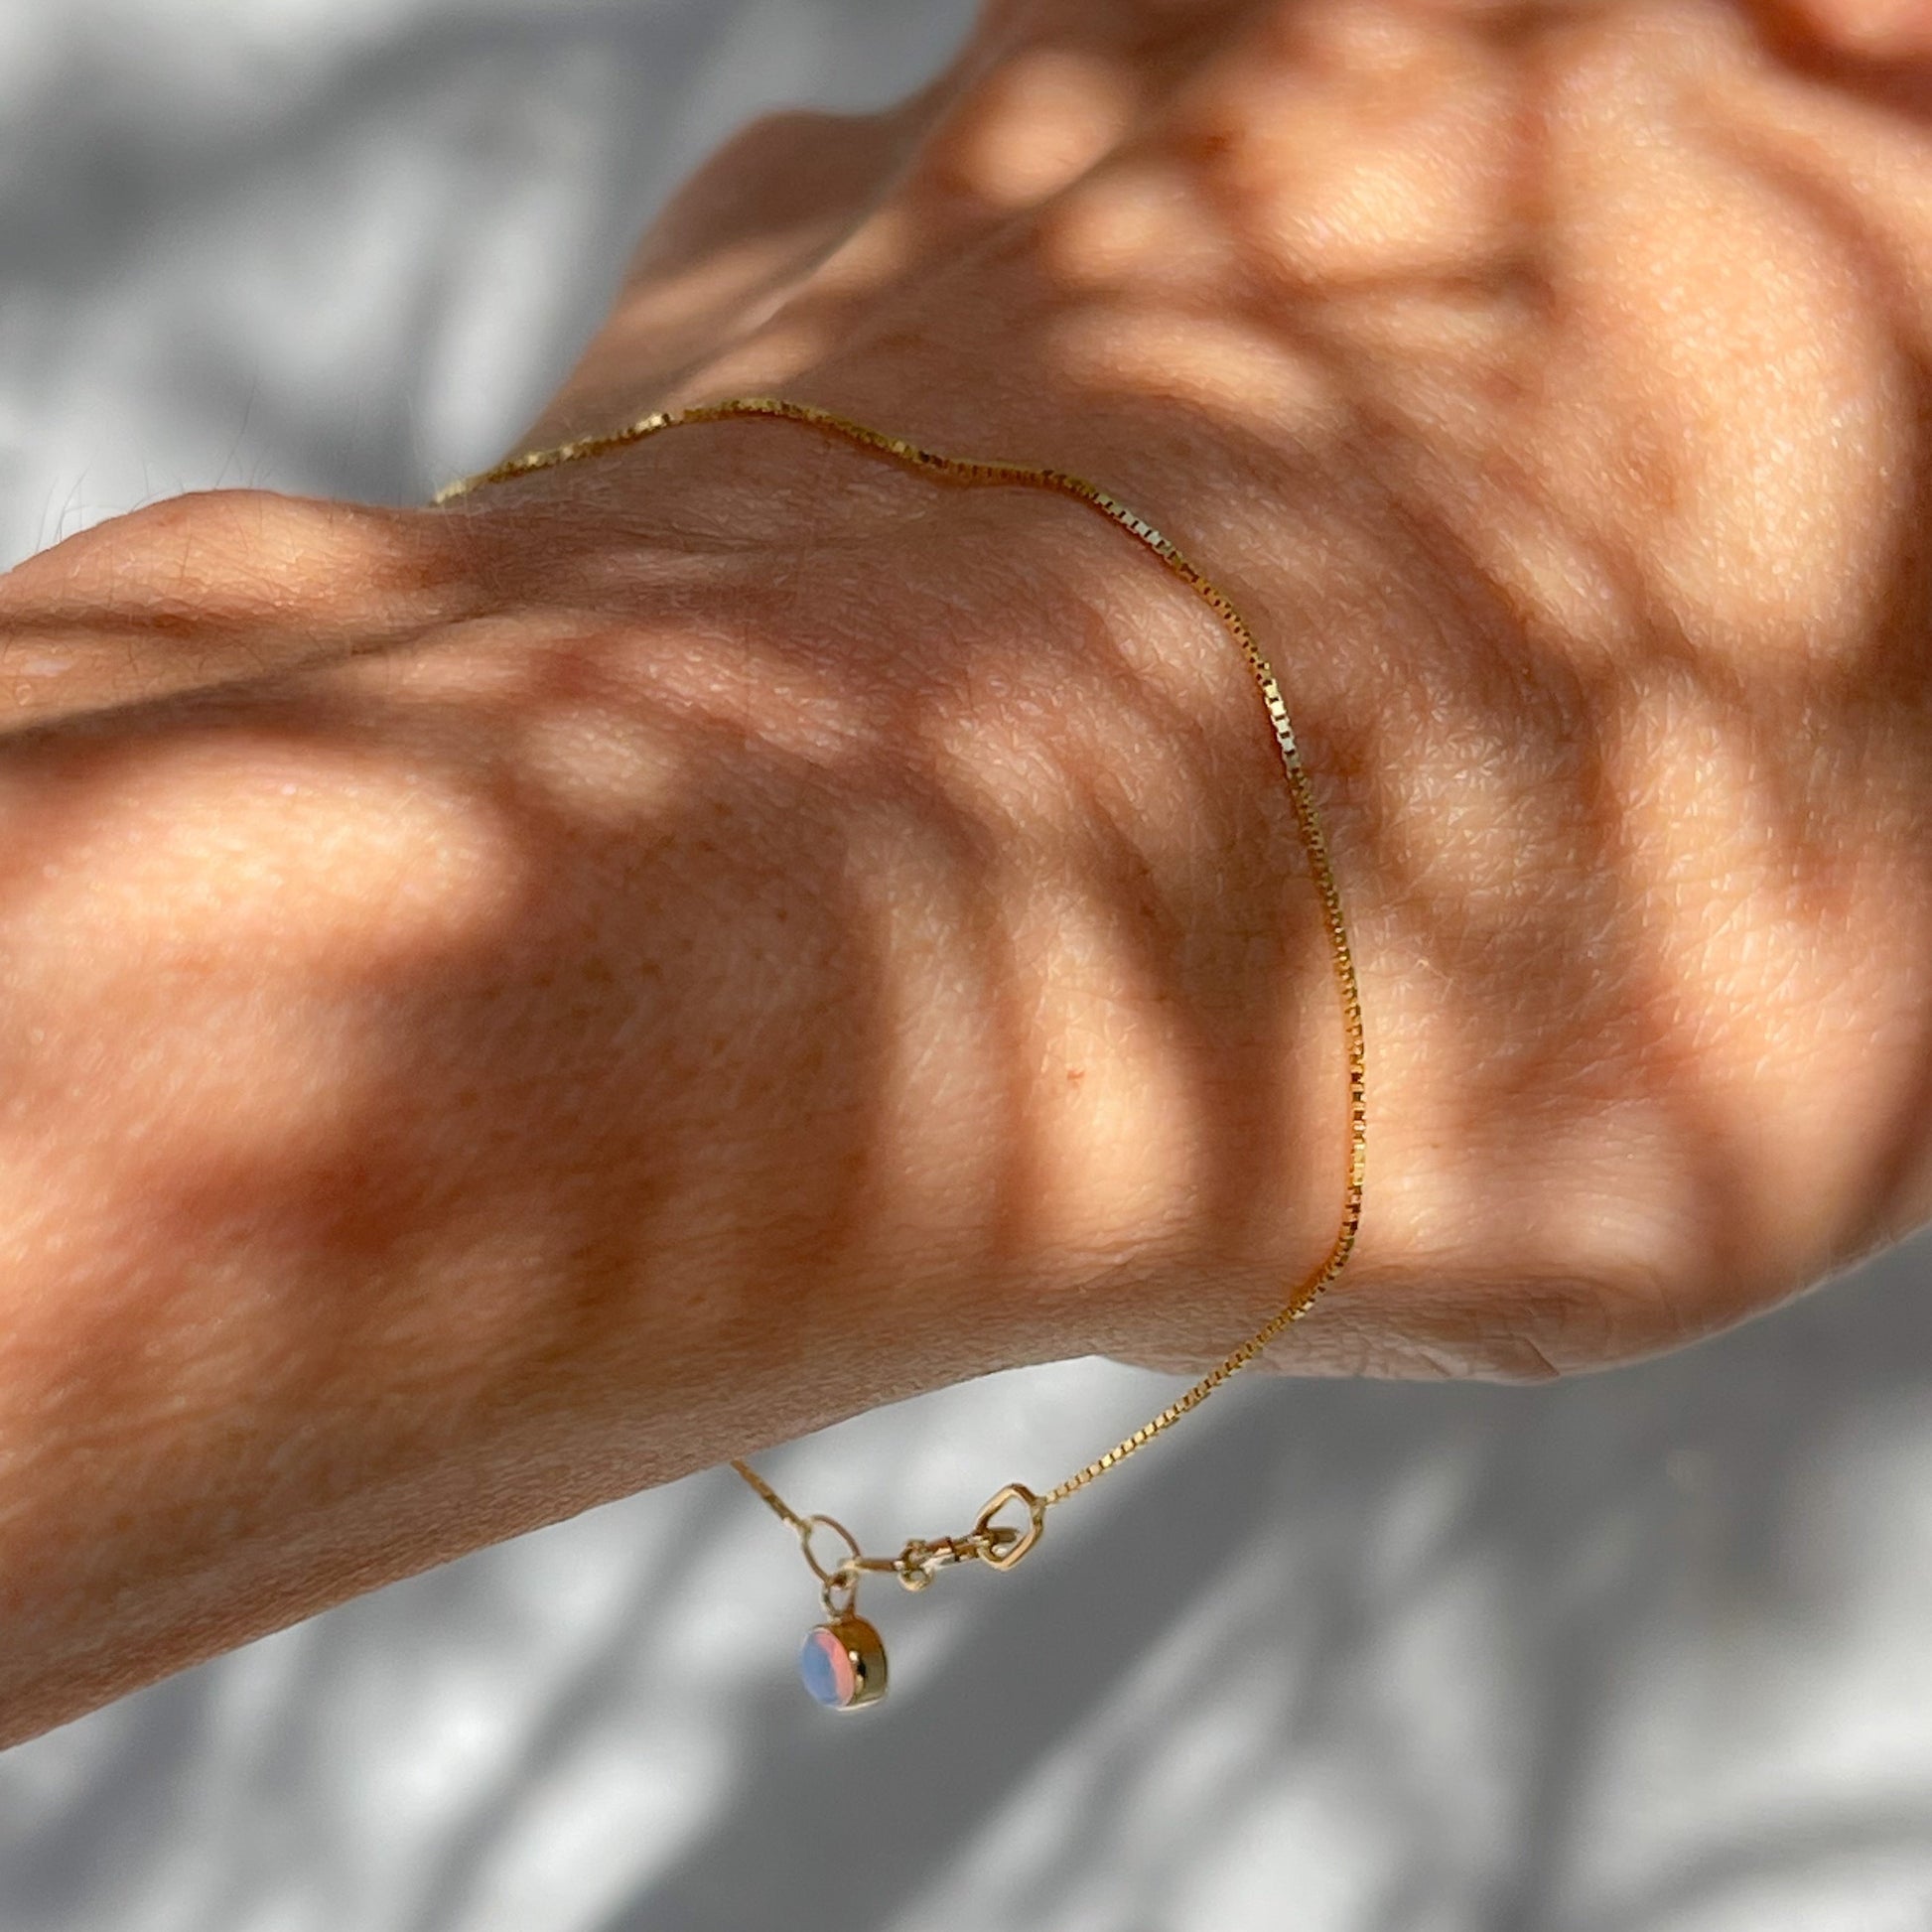 An Australian Opal Bracelet by NIXIN Jewelry worn by a model and shown in shade. A sweet opal charm bracelet.